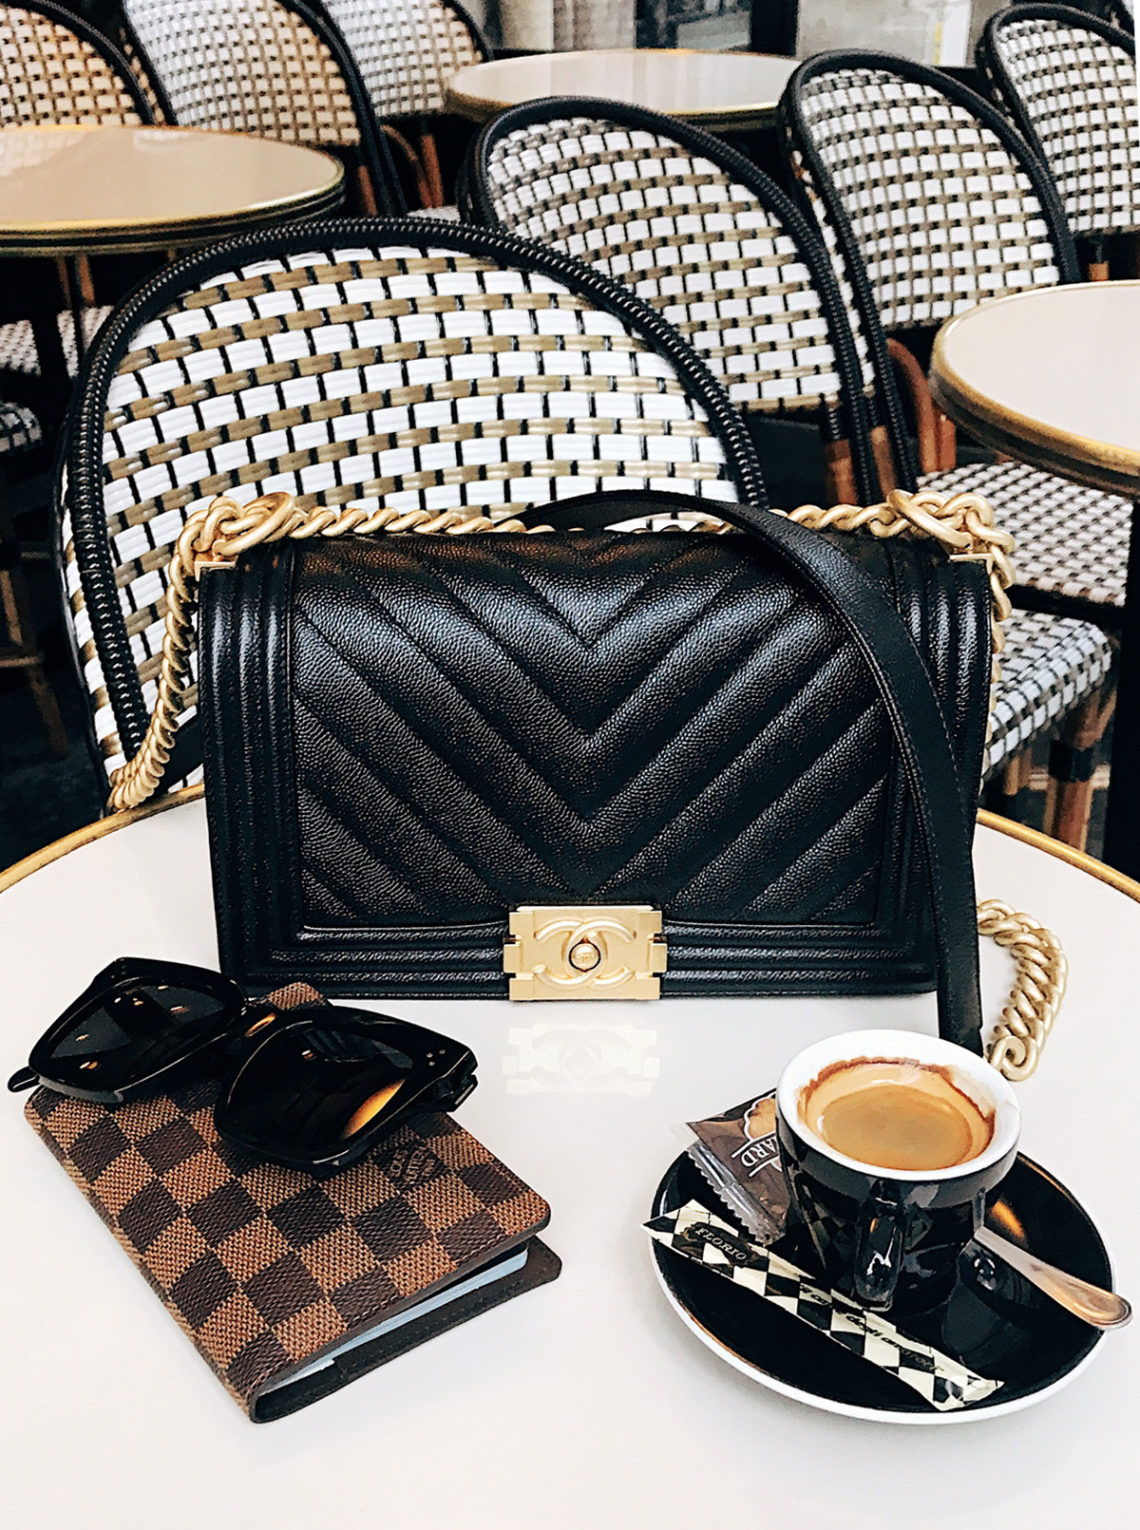 Paris Cafe Chanel Boy Bag Black Chevron Celine Sunglasses Louis Vuitton Passport Holder